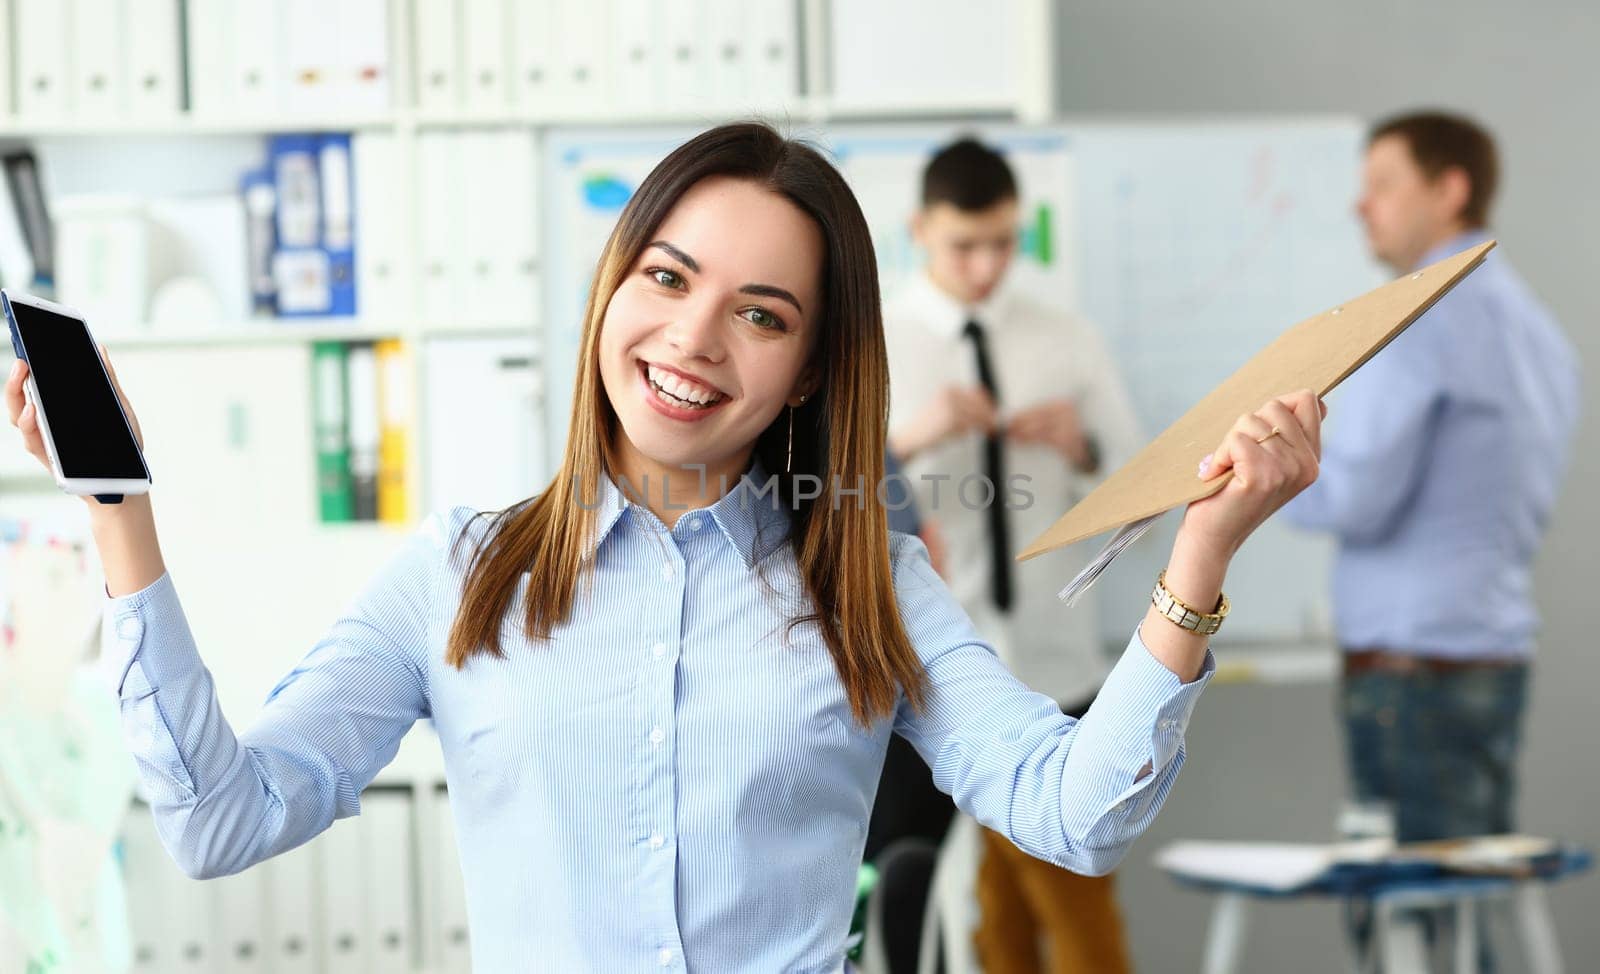 Portrait of a joyful smiling beautiful businesswoman in office by kuprevich